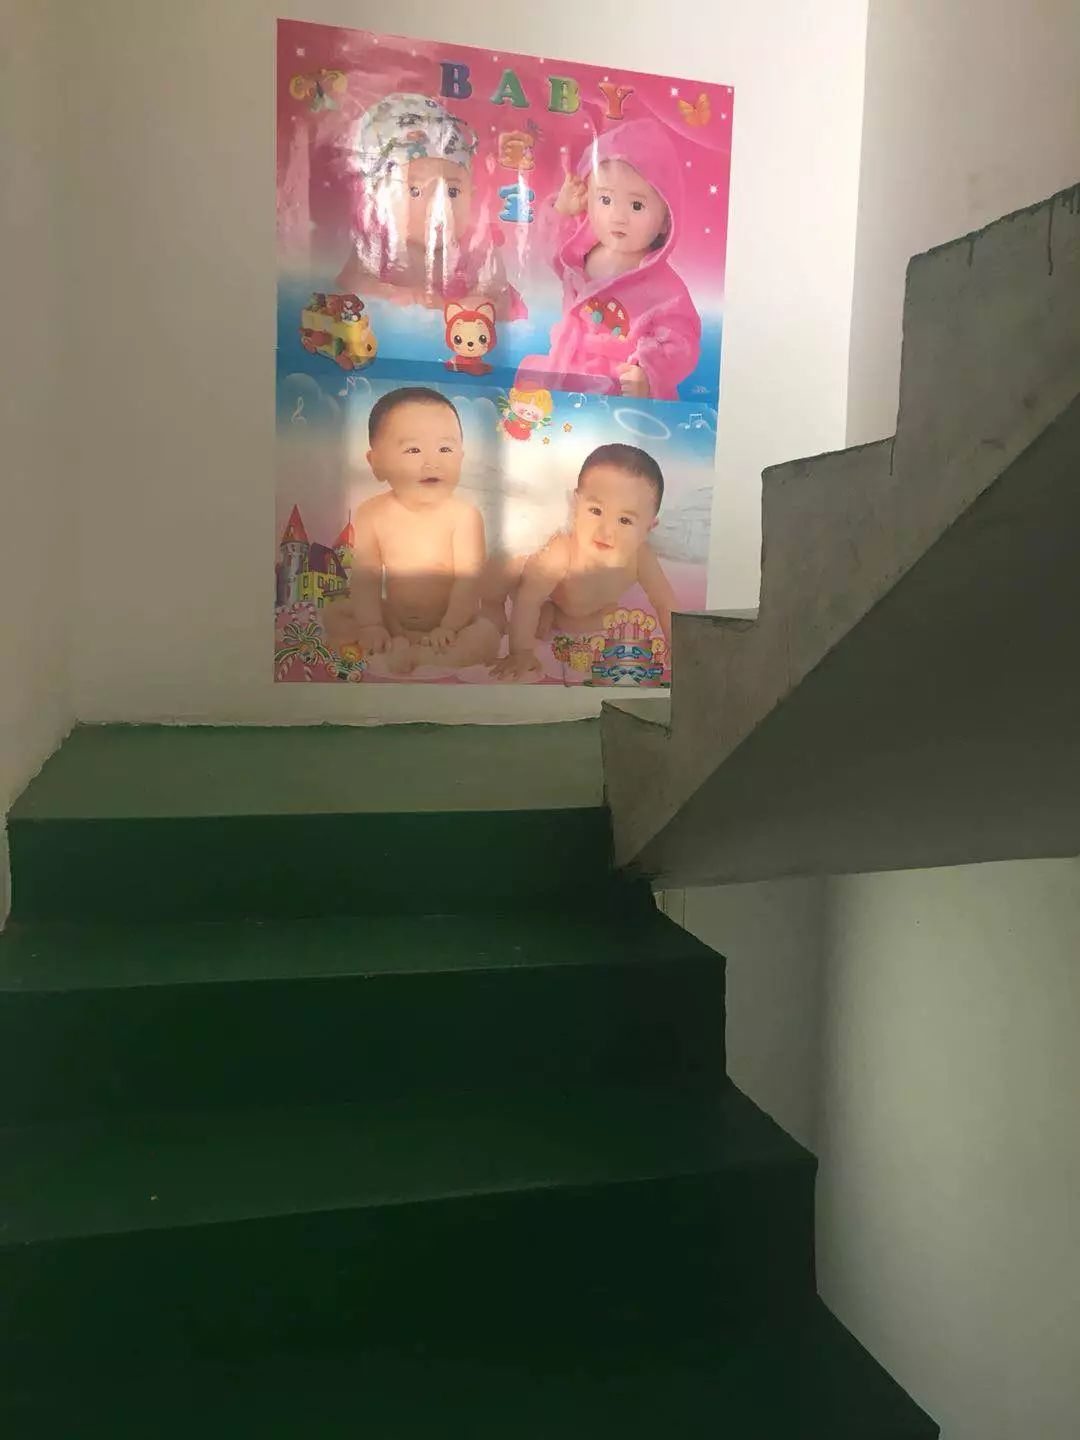 （新房楼梯口的墙面上，张福如为儿子贴上几张娃娃画像，寓意早生贵子。）